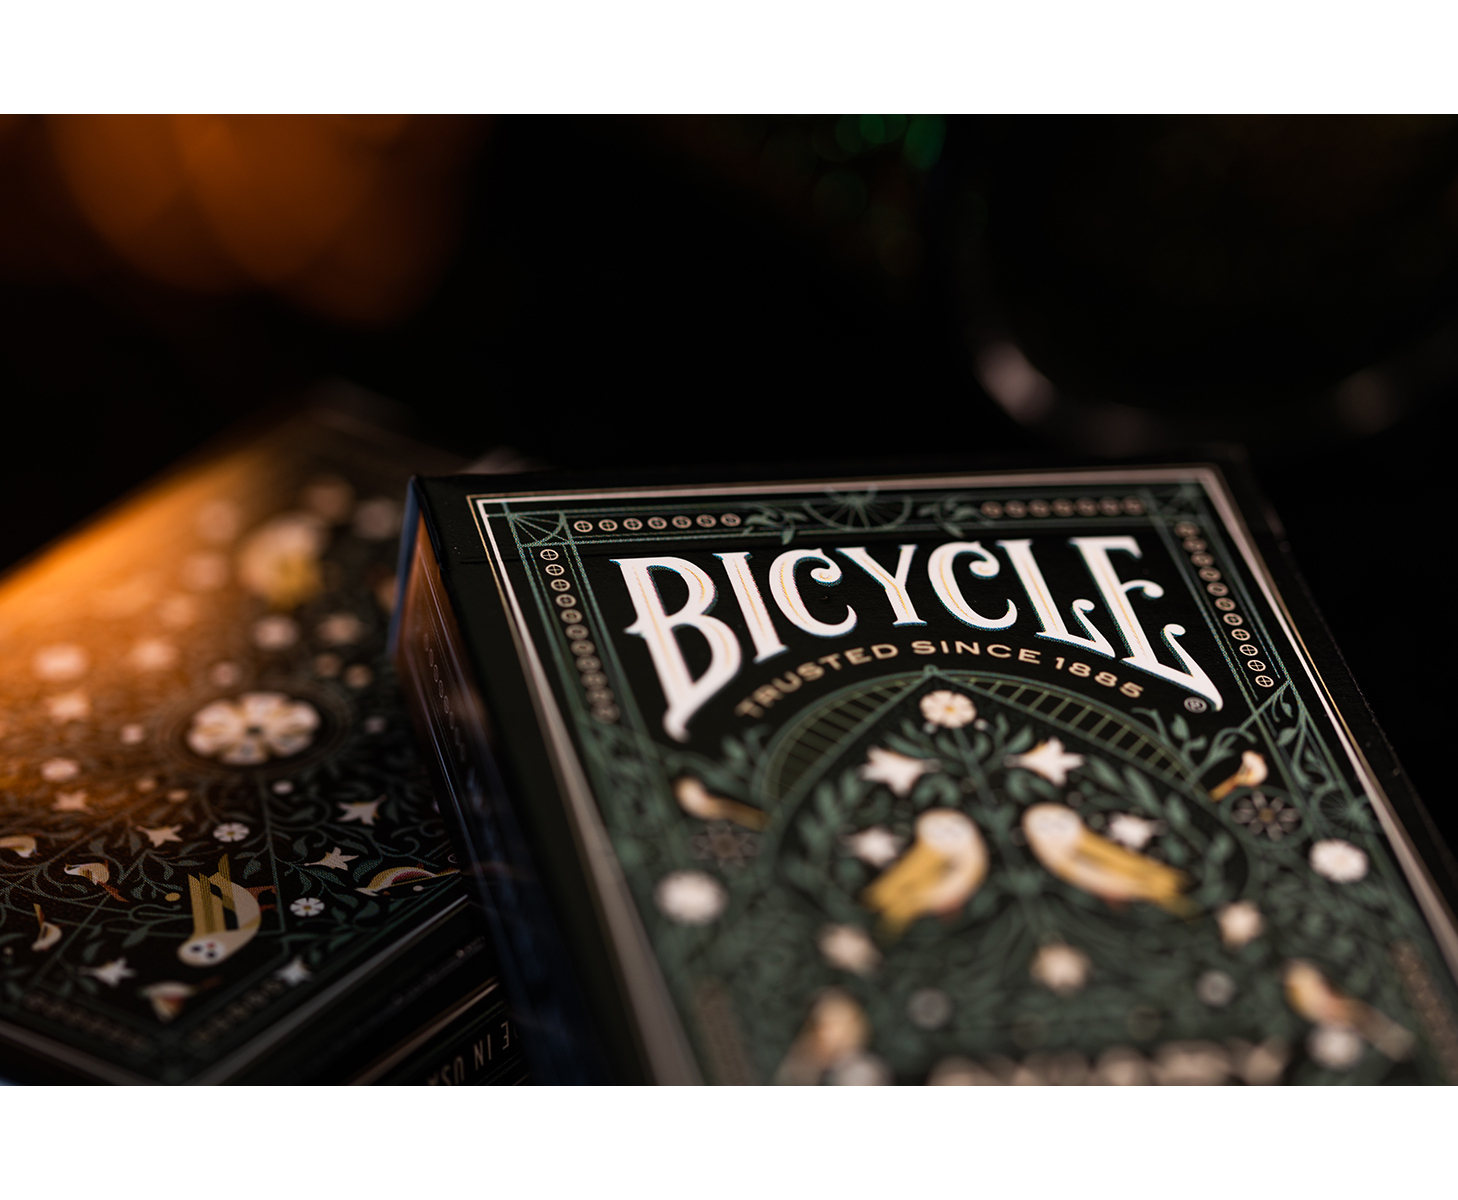 ALTENBURGER Kartenspiel - ASS Bicycle Aviary Kartendeck